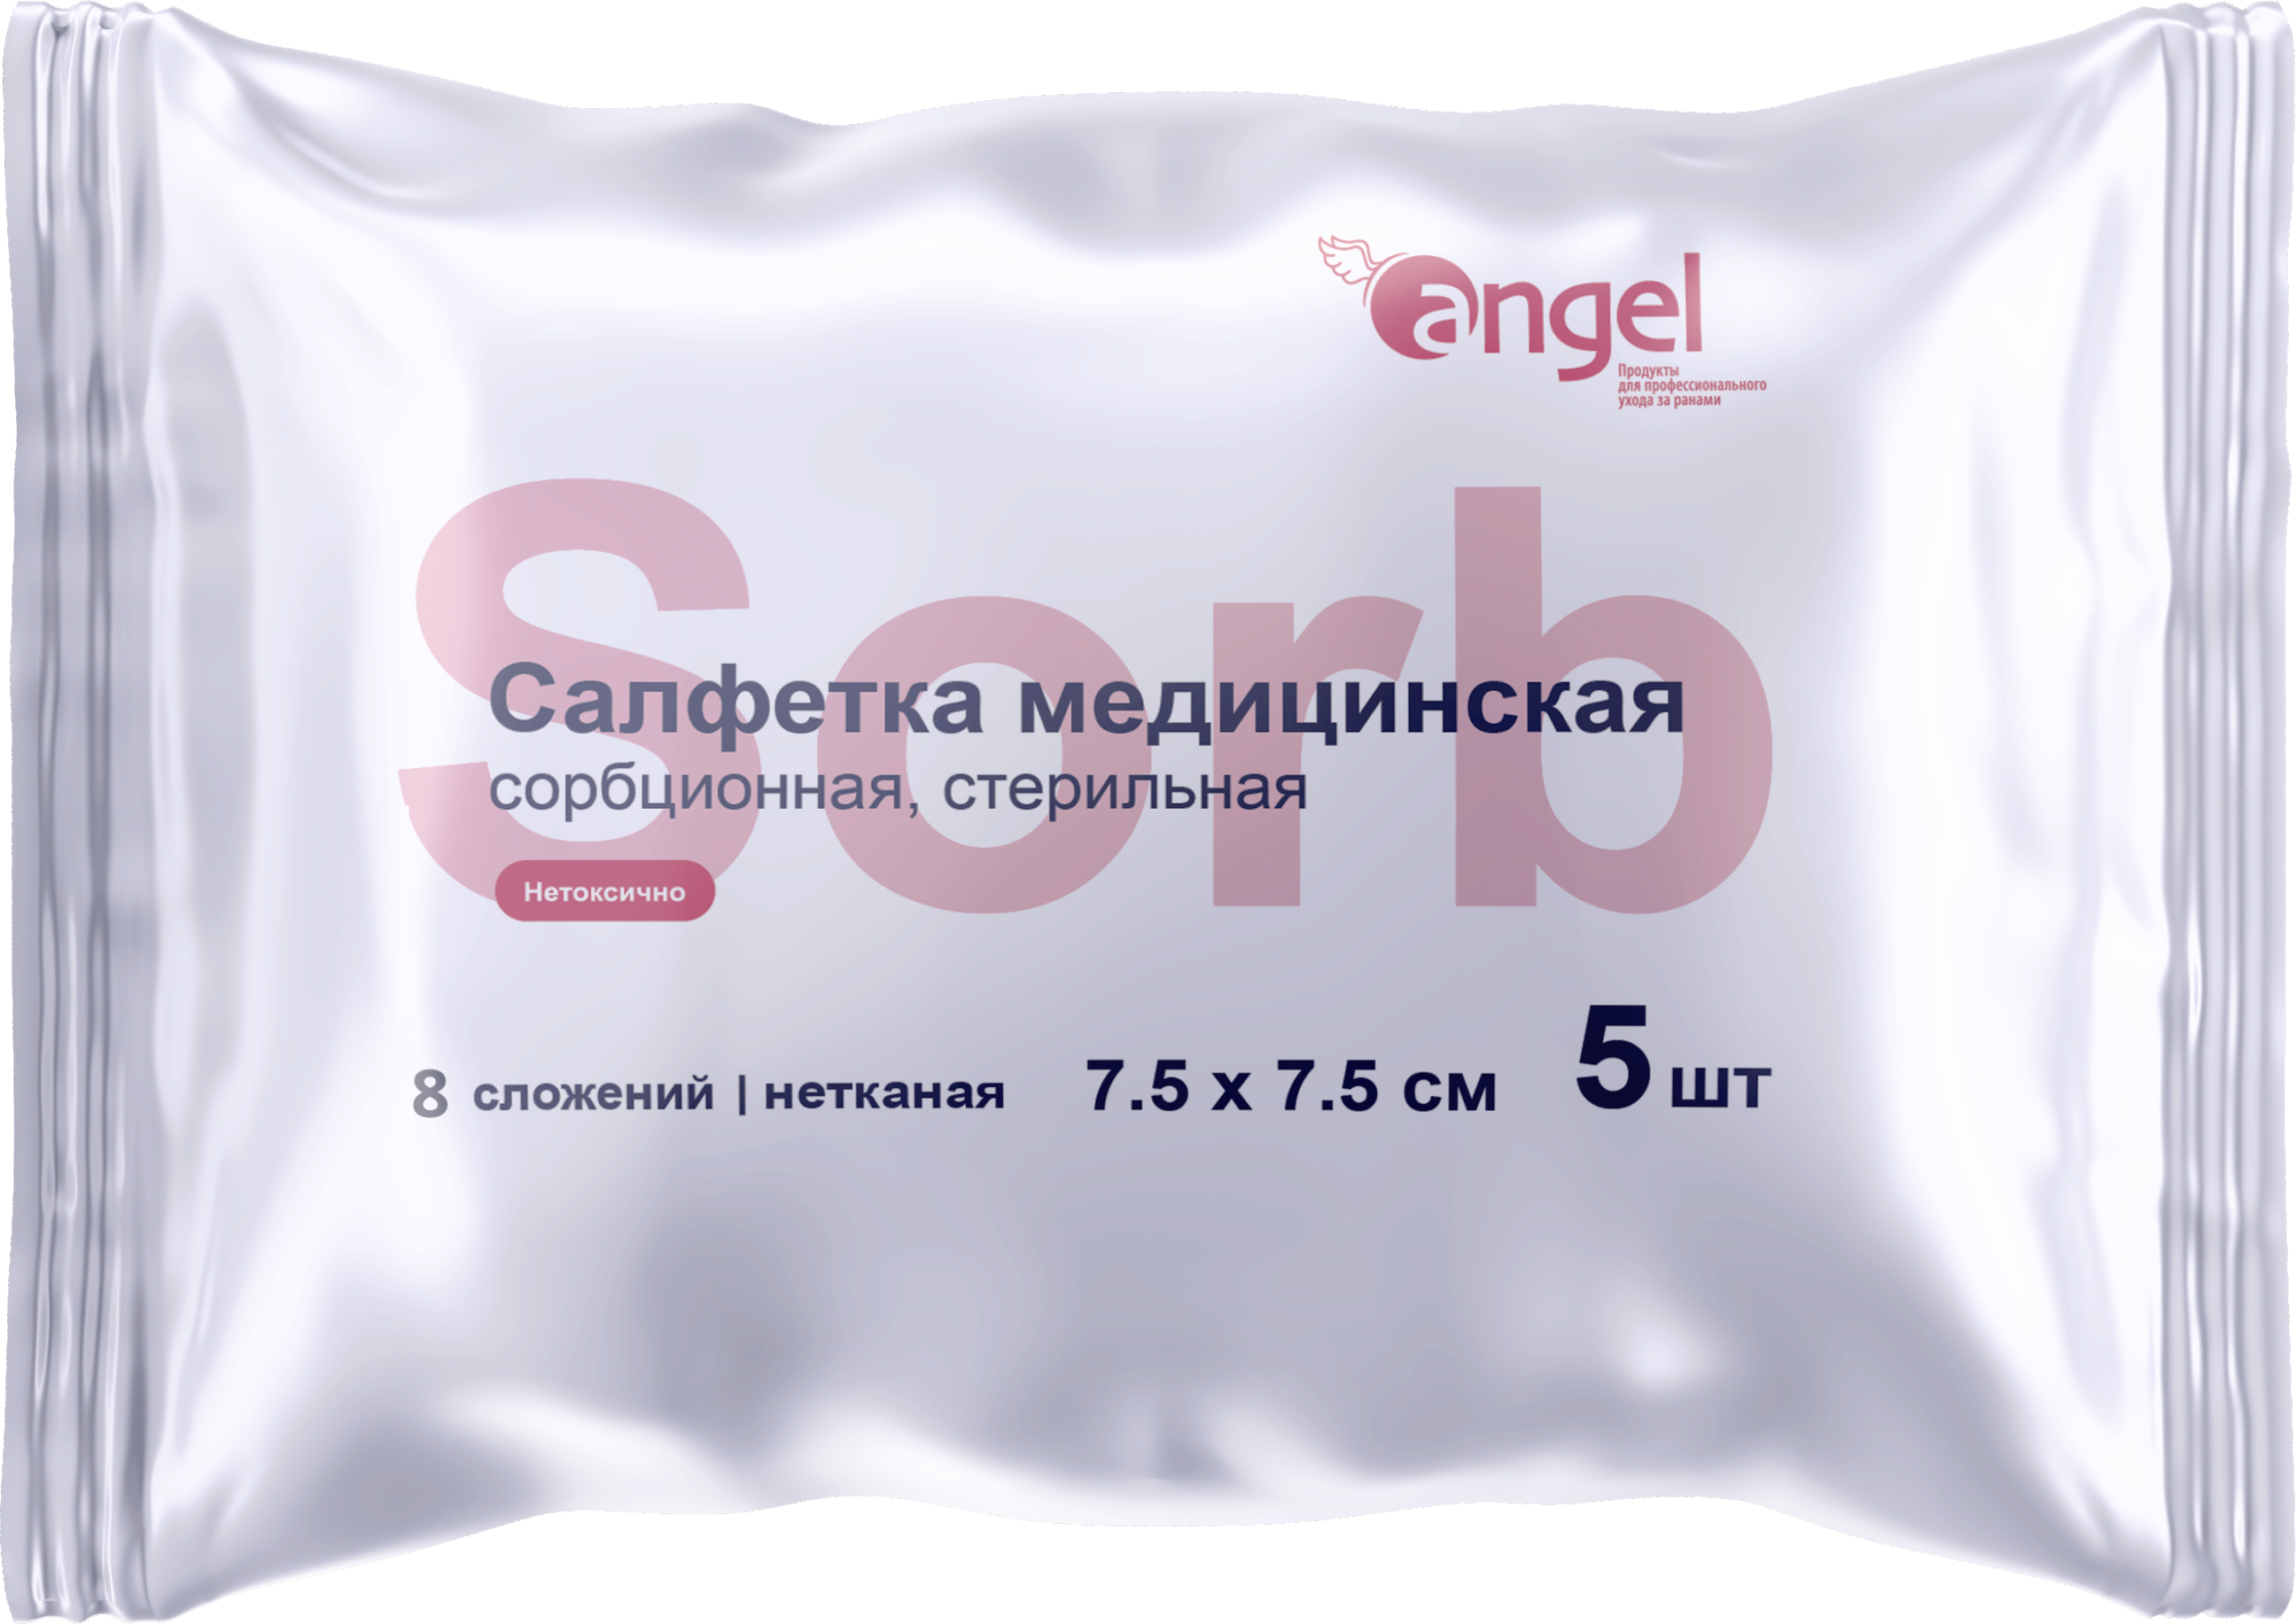 Angel / Ангел - салфетки сорбционные нетканые стерильные 8 сл 75x75 см 5 шт.